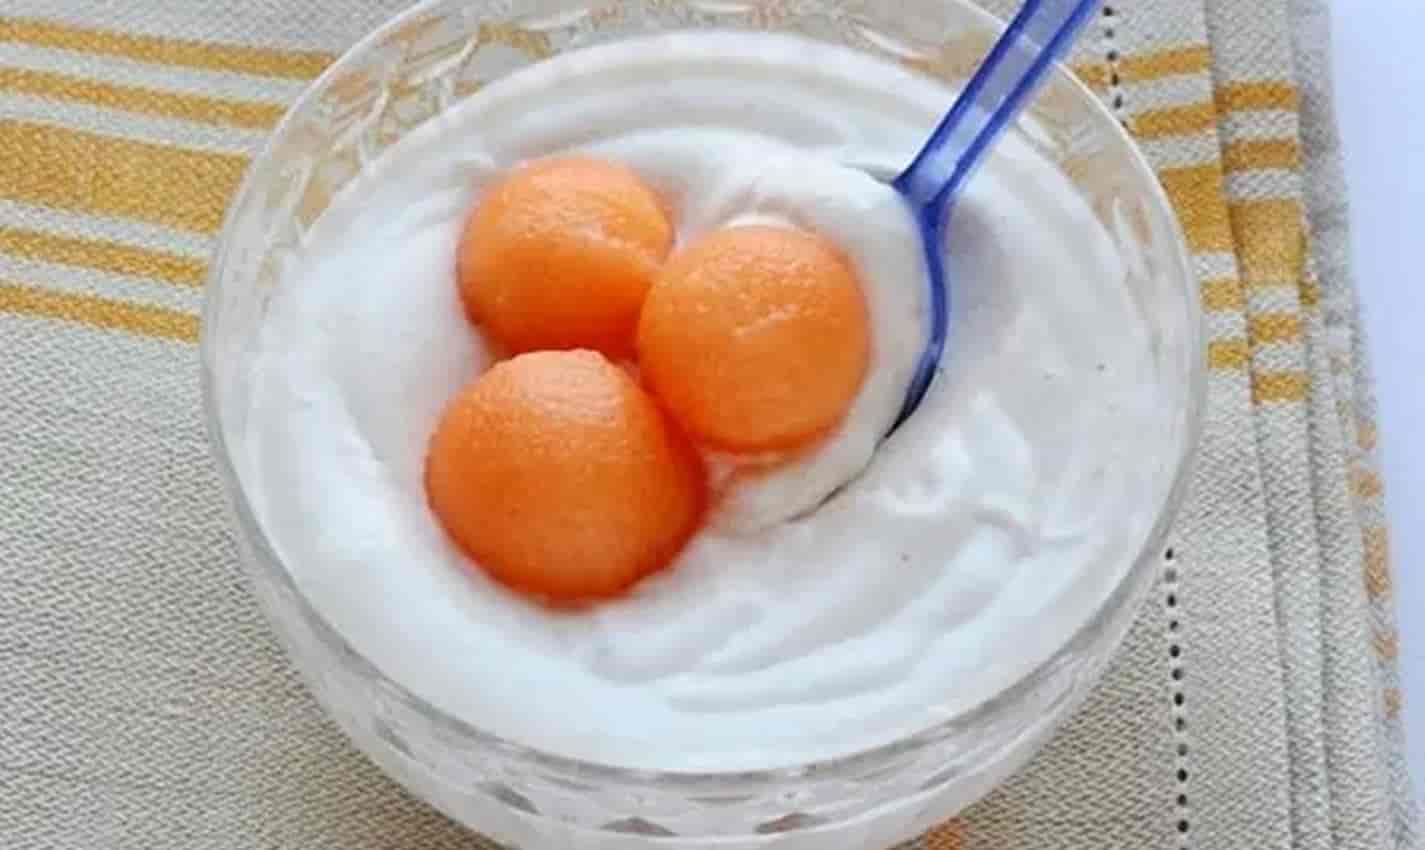 Mousse de iogurte, uma sobremesa cremosa com apenas 4 ingredientes